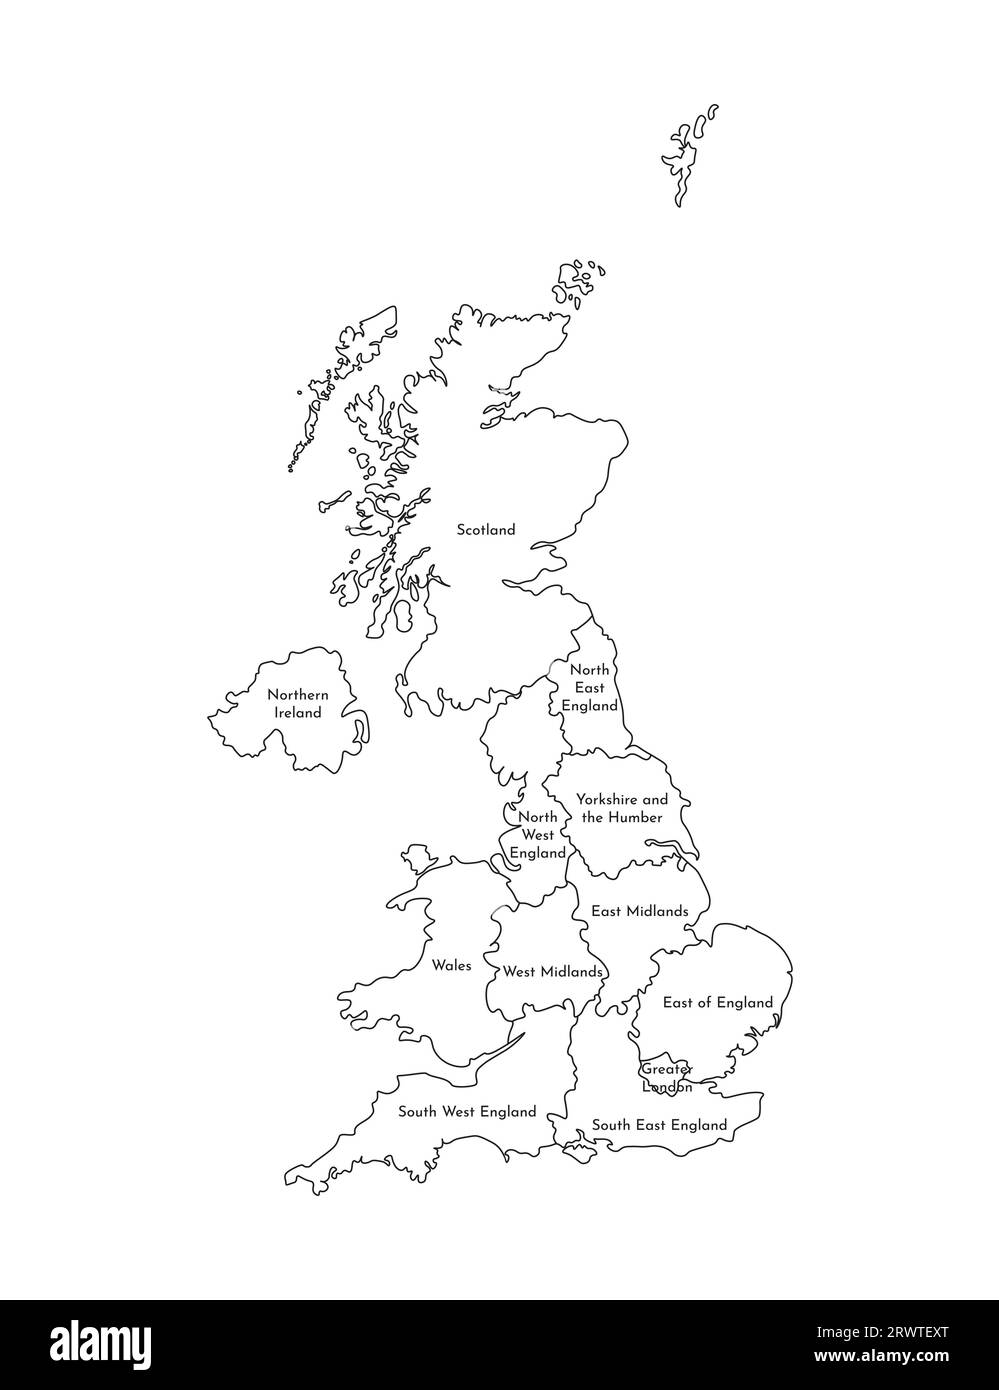 Illustration vectorielle isolée d'une carte administrative simplifiée du Royaume-Uni de Grande-Bretagne et d'Irlande du Nord. Bordures et noms des RE Illustration de Vecteur